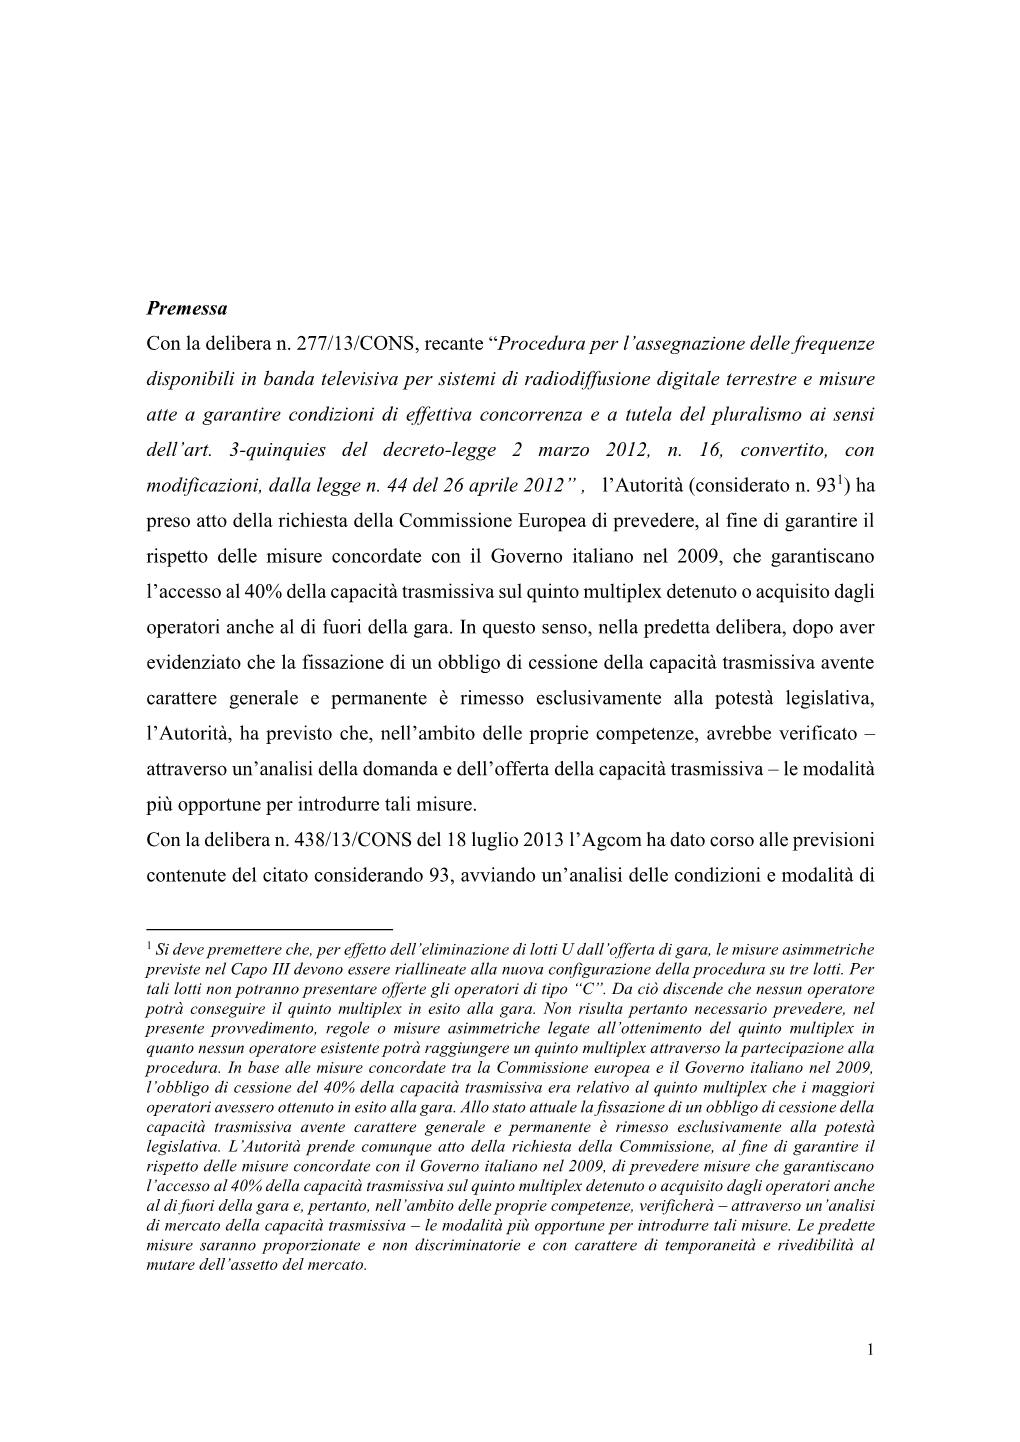 Premessa Con La Delibera N. 277/13/CONS, Recante